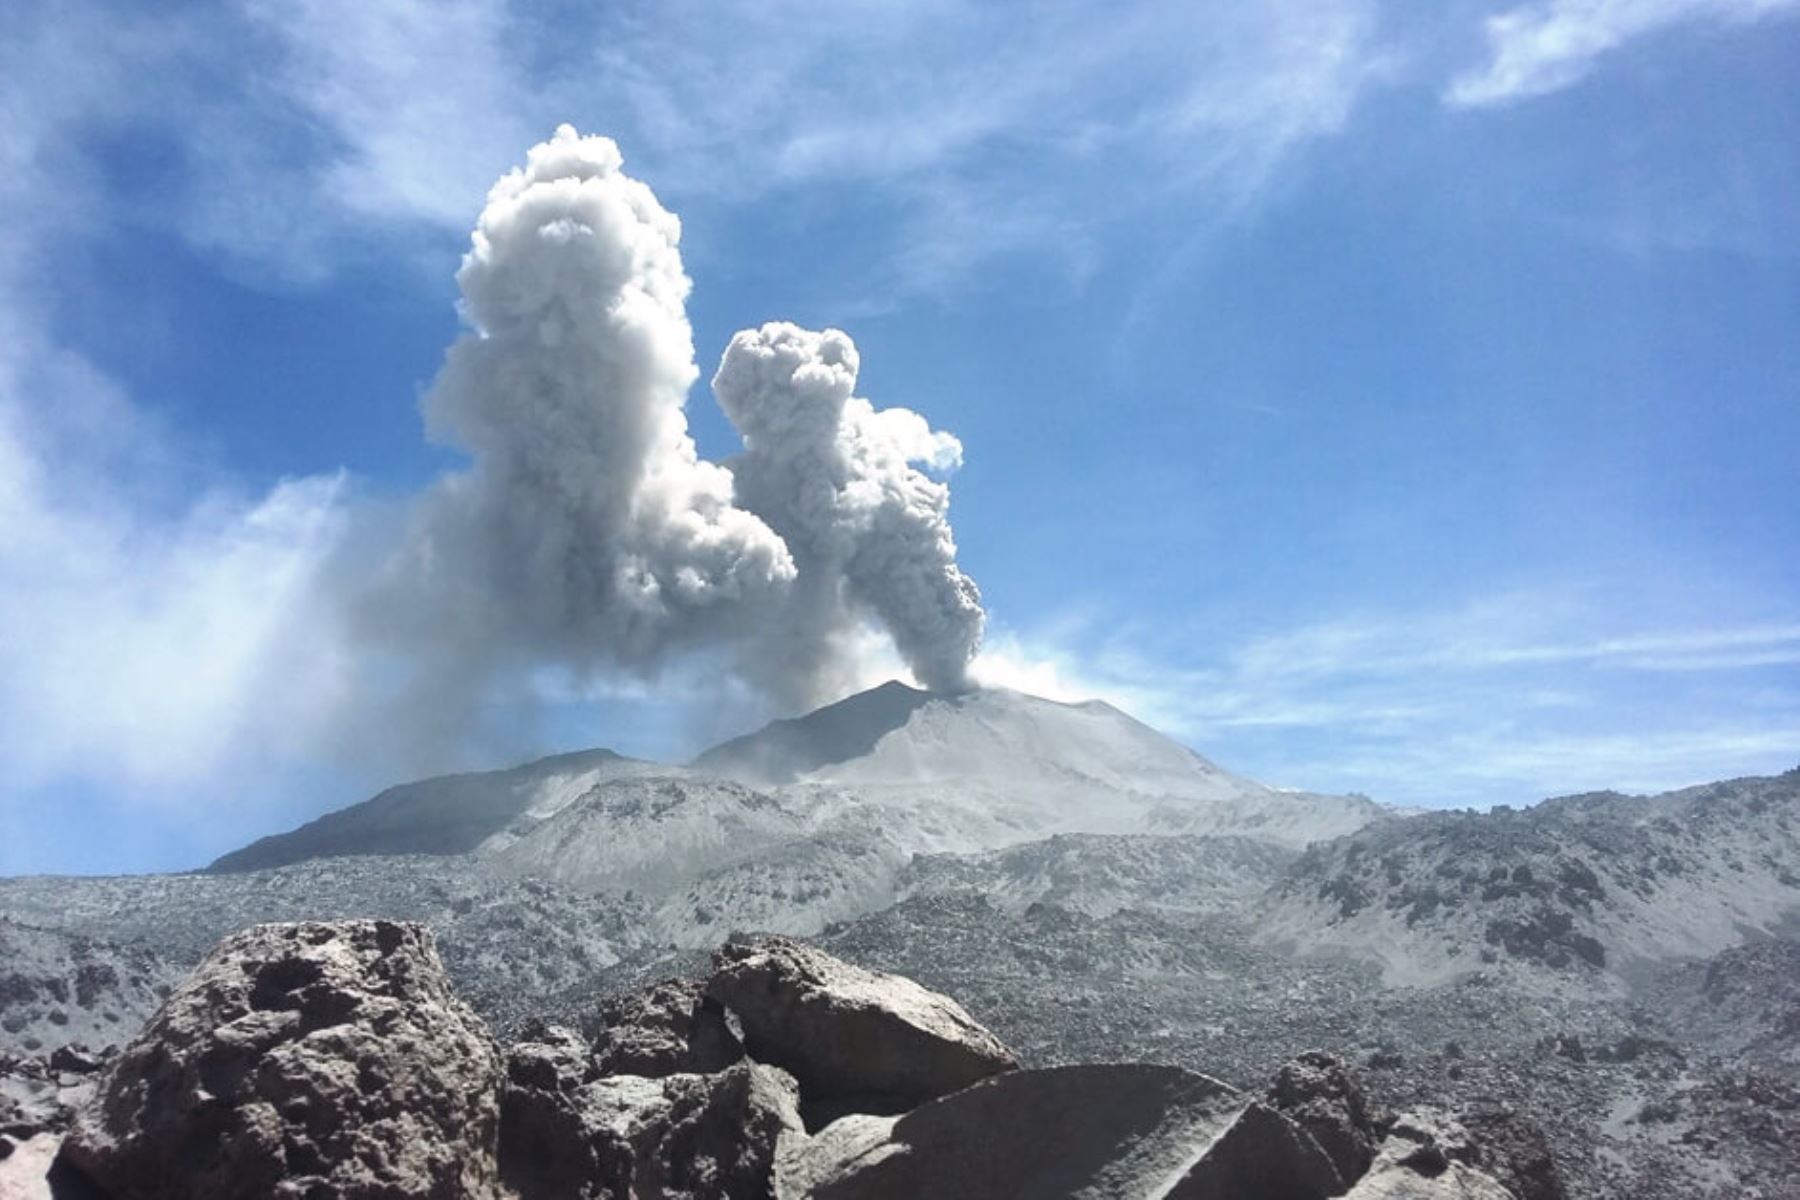 El volcán Sabancaya registra un promedio de 25 explosiones por día, con columnas eruptivas de gases y cenizas que llegaron hasta una altura aproximada de 3,000 metros sobre el cráter, informó el Observatorio Vulcanológico del Ingemmet (OVI). ANDINA/Difusión